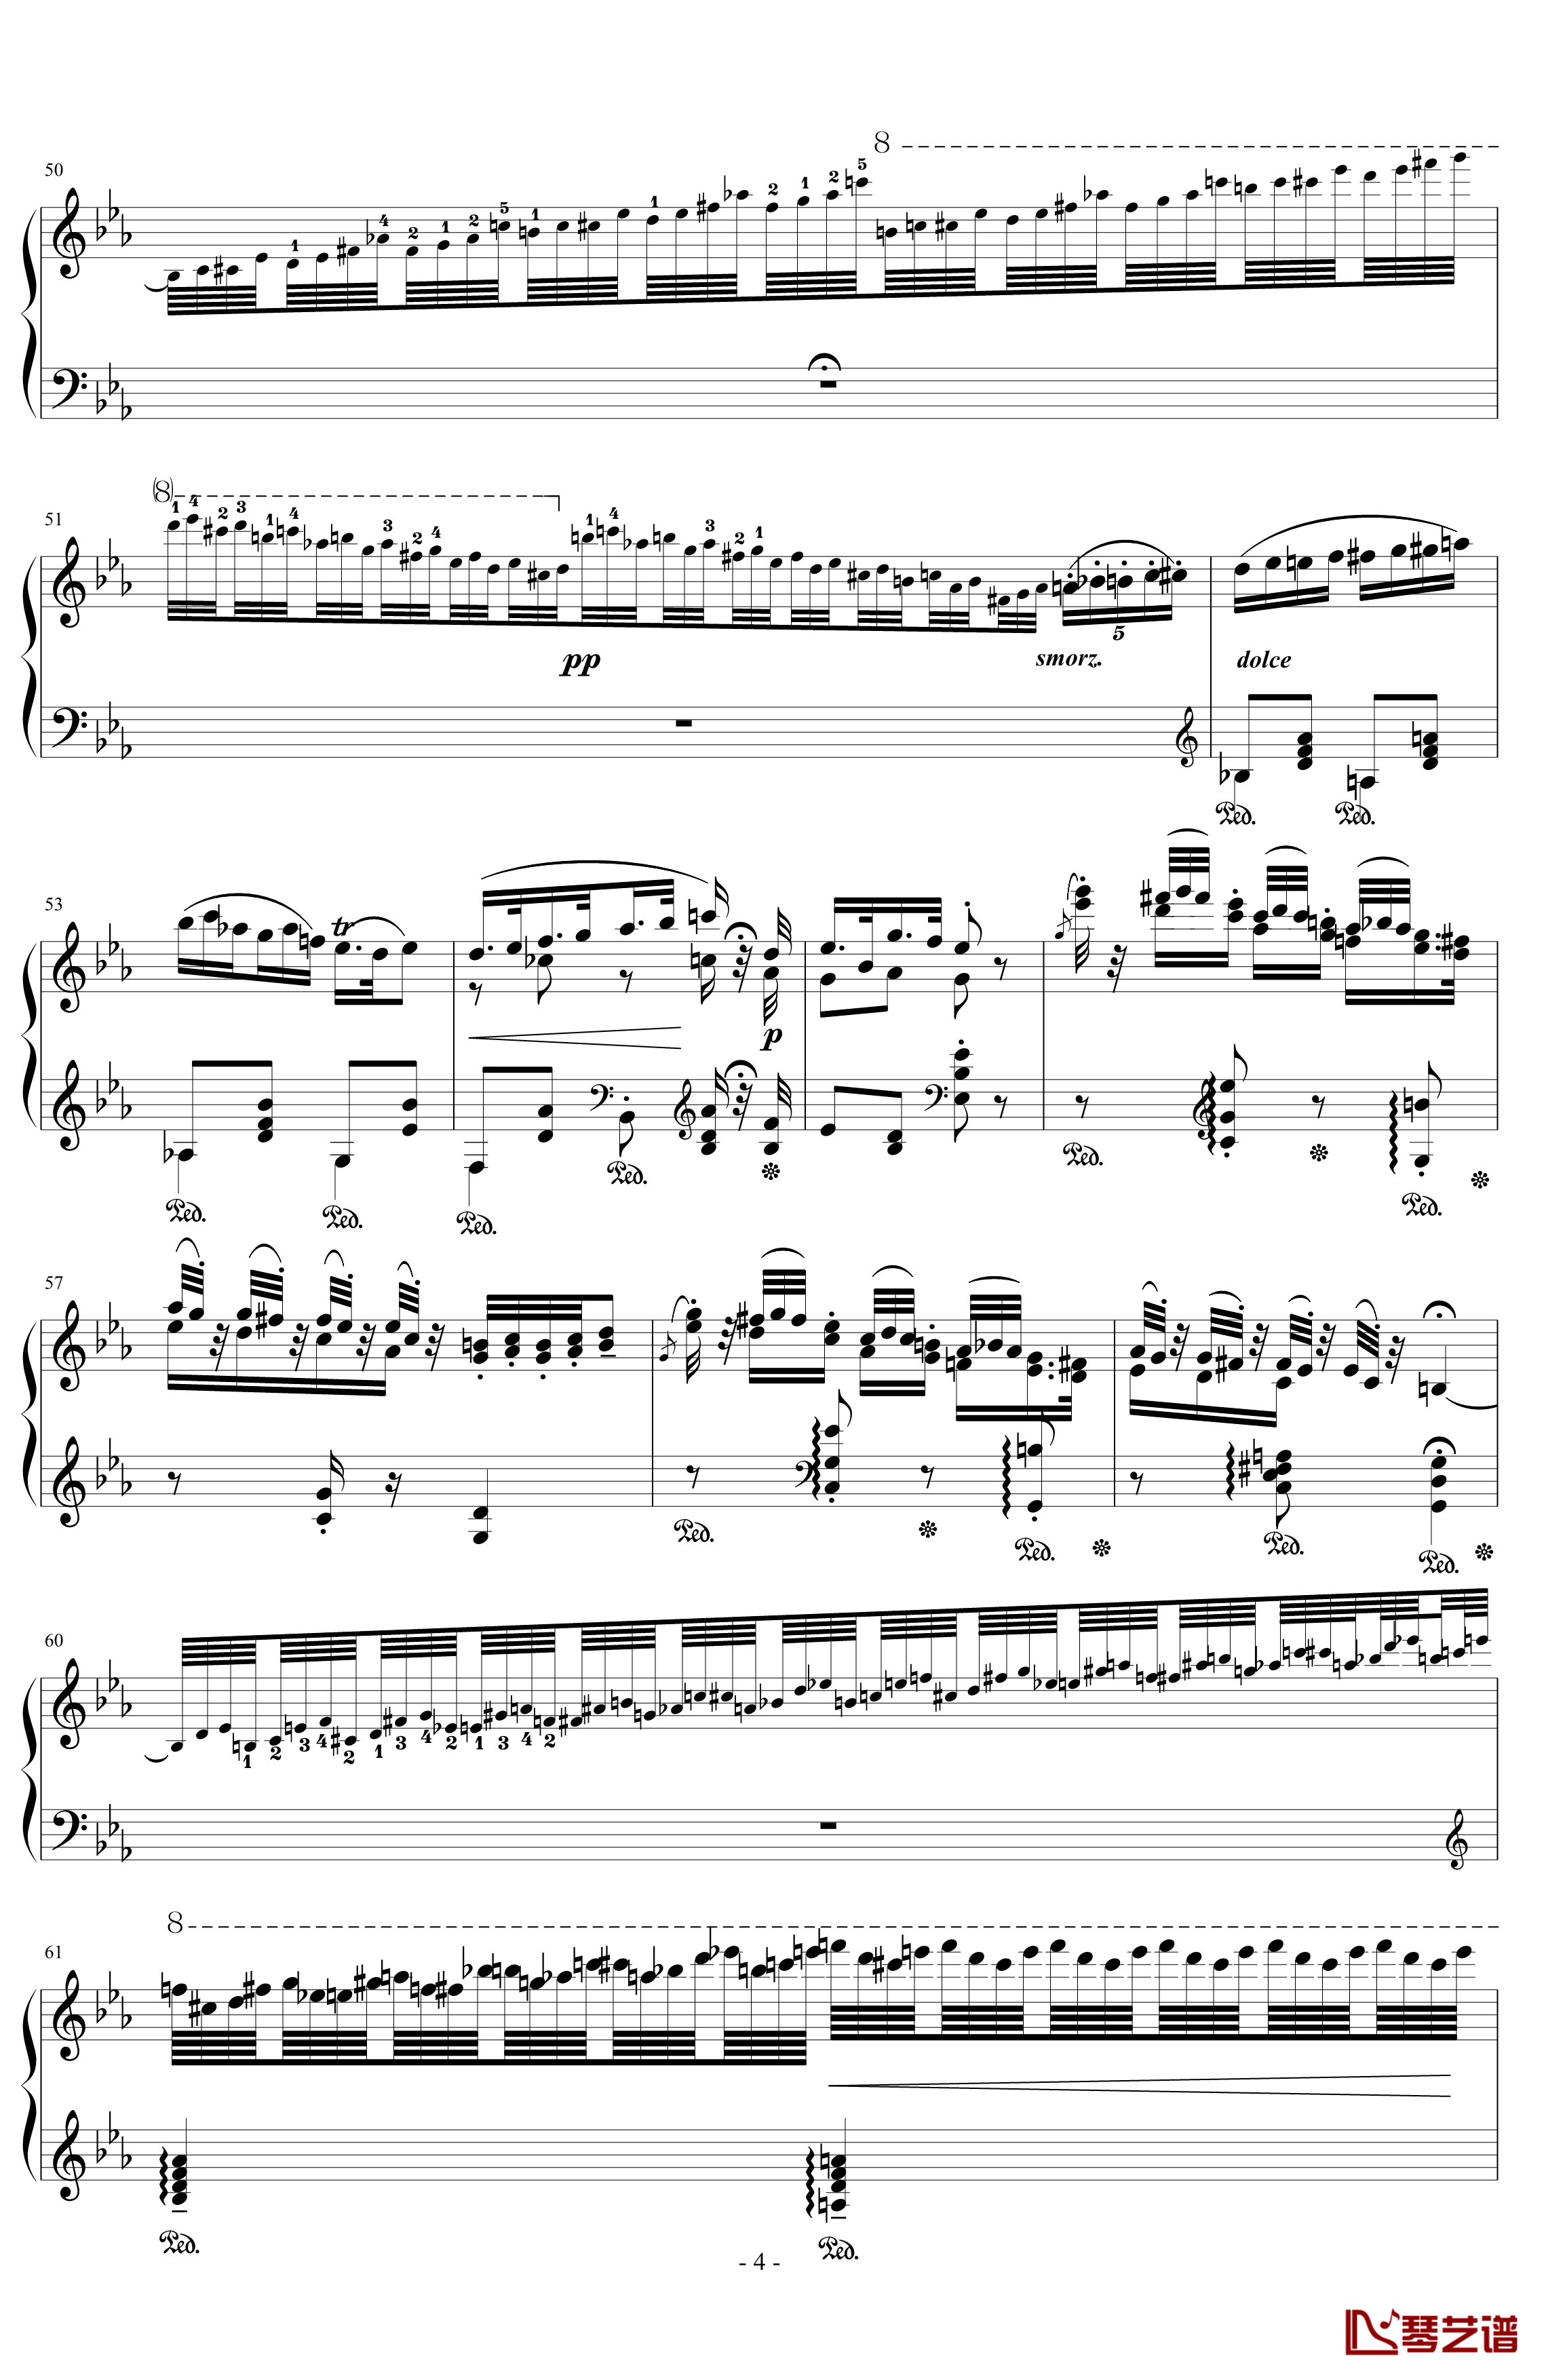 匈牙利狂想曲第4号钢琴谱-华丽而动听的狂想曲-李斯特4